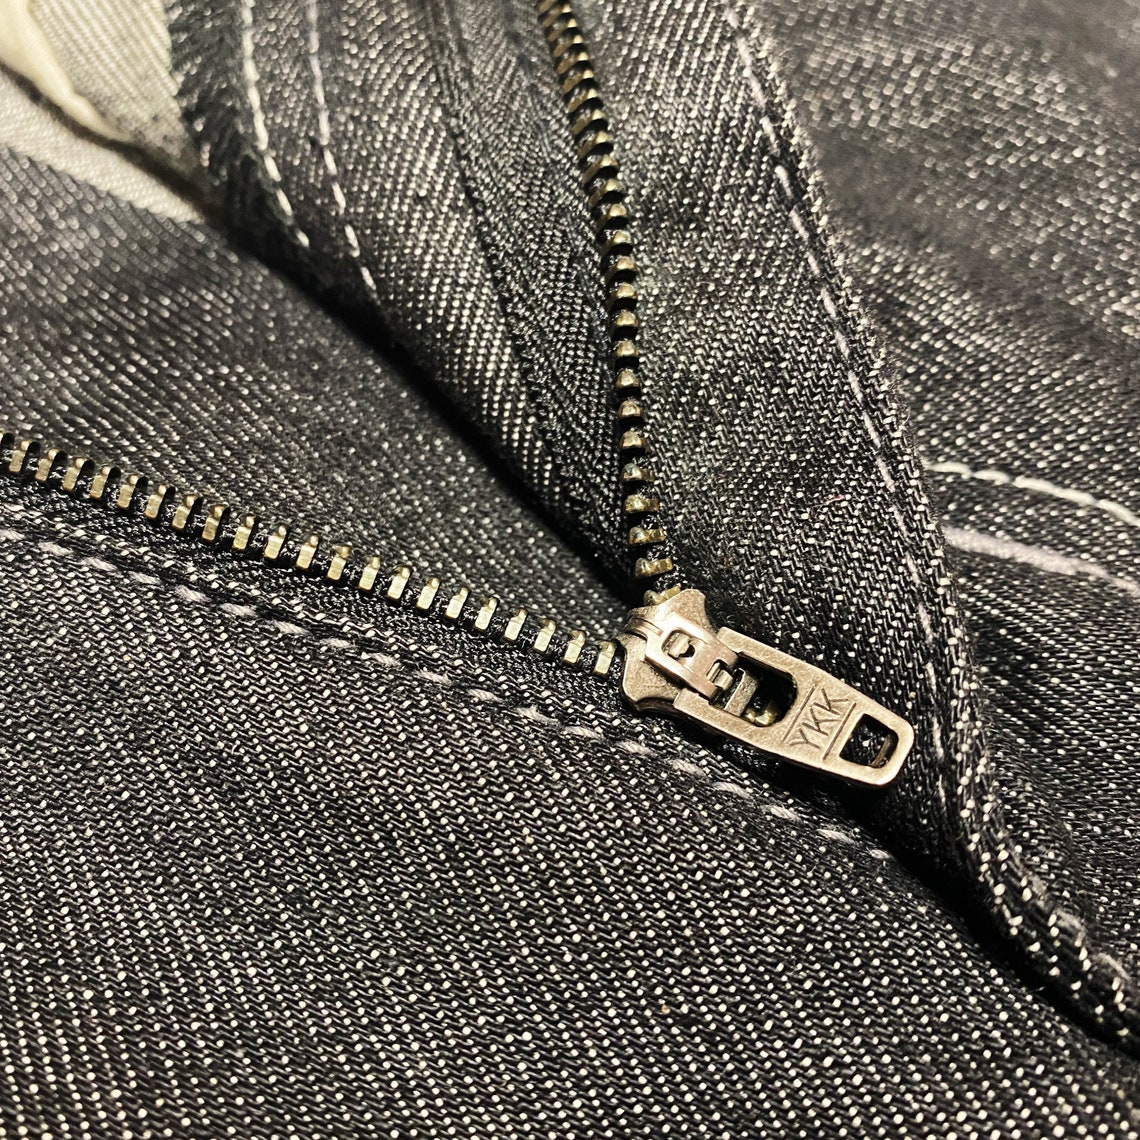 Ecko unltd vintage rare black jeans with patches | Etsy